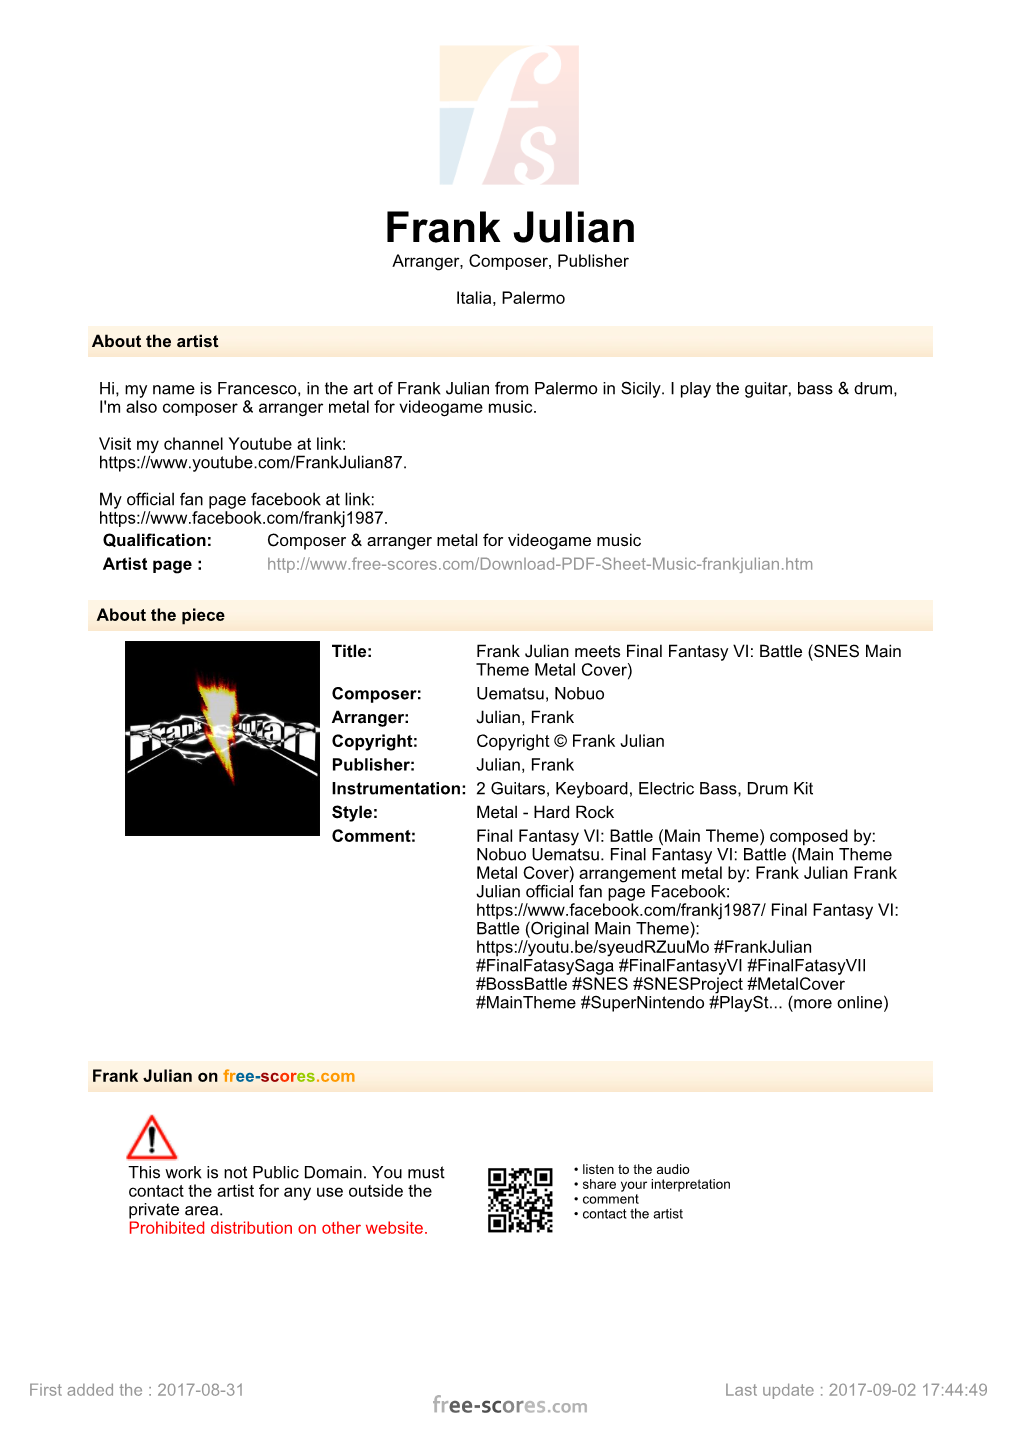 Frank Julian Meets Final Fantasy VI